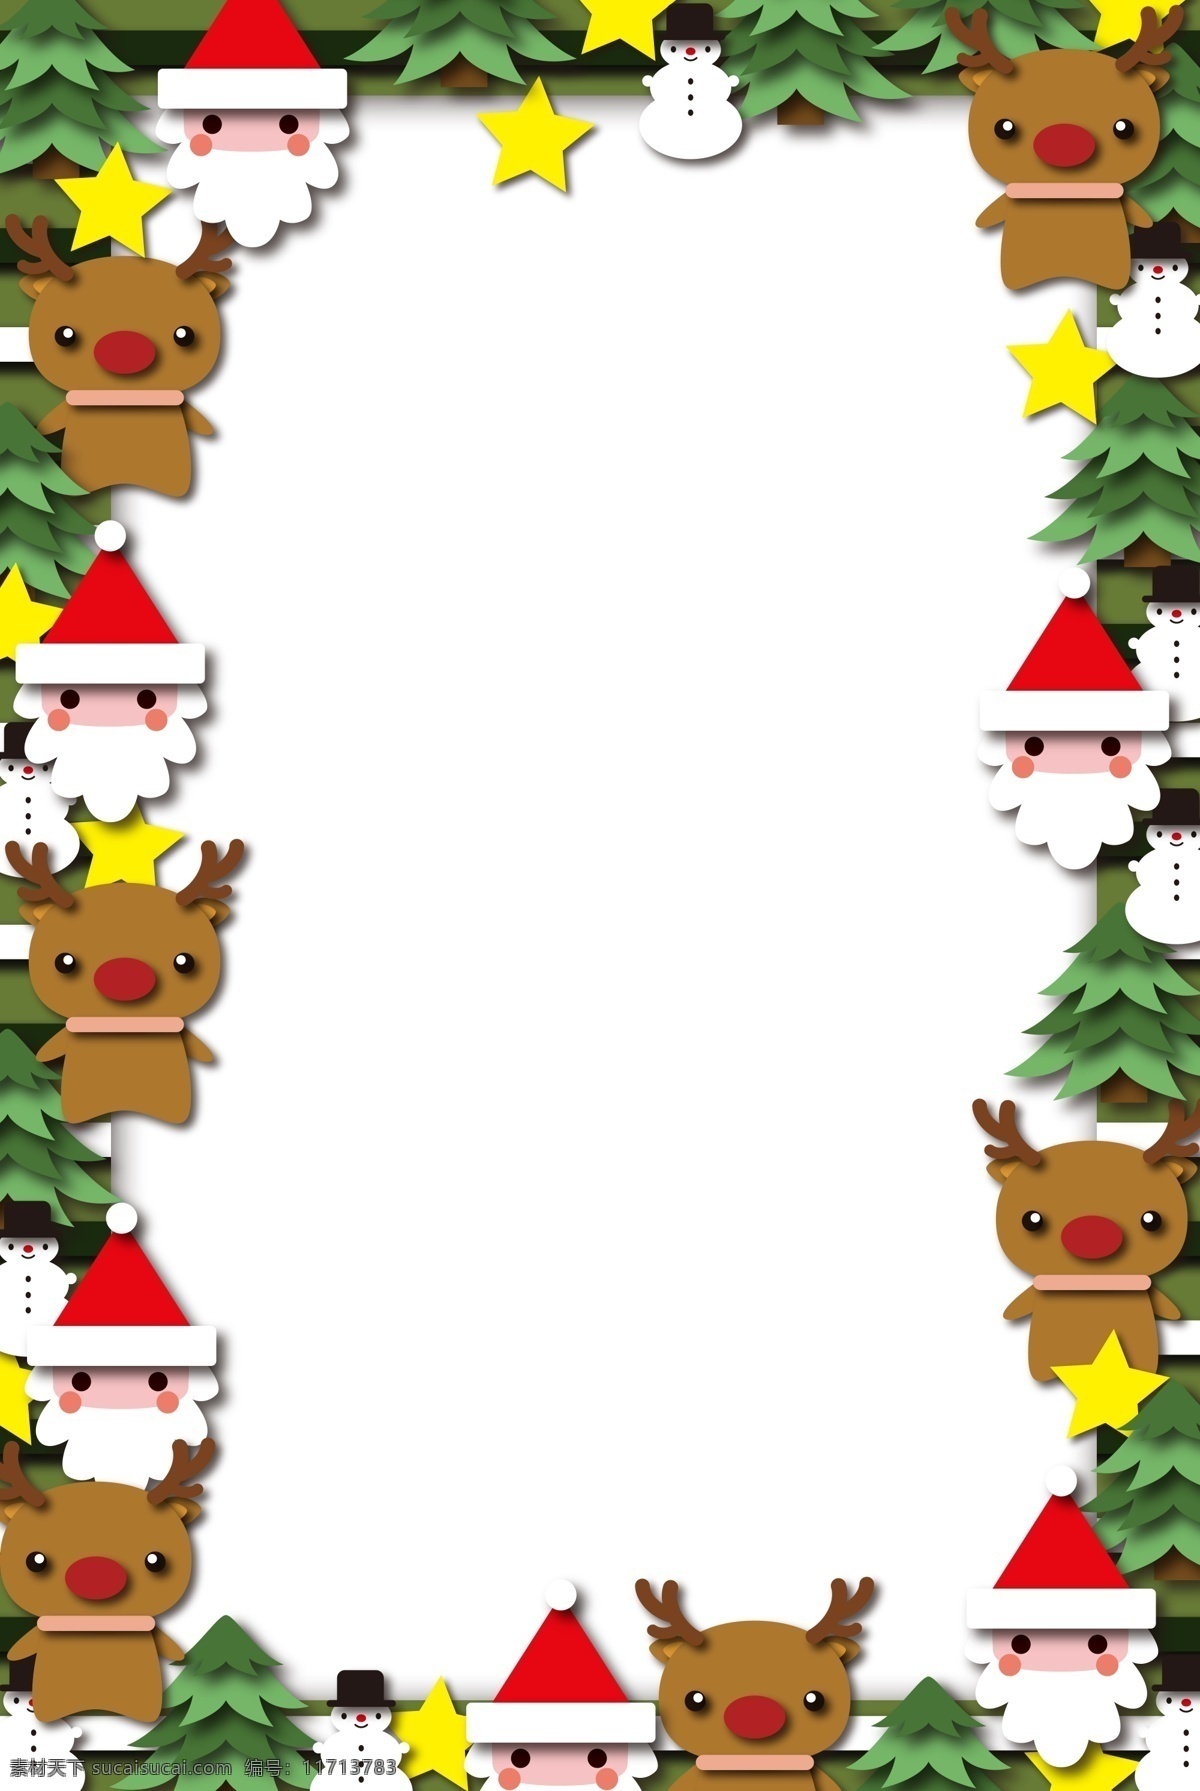 圣诞节 圣诞老人 边框 手绘 黄色的五角星 红色的圣诞帽 可爱的麋鹿 绿色的边框 可爱的边框